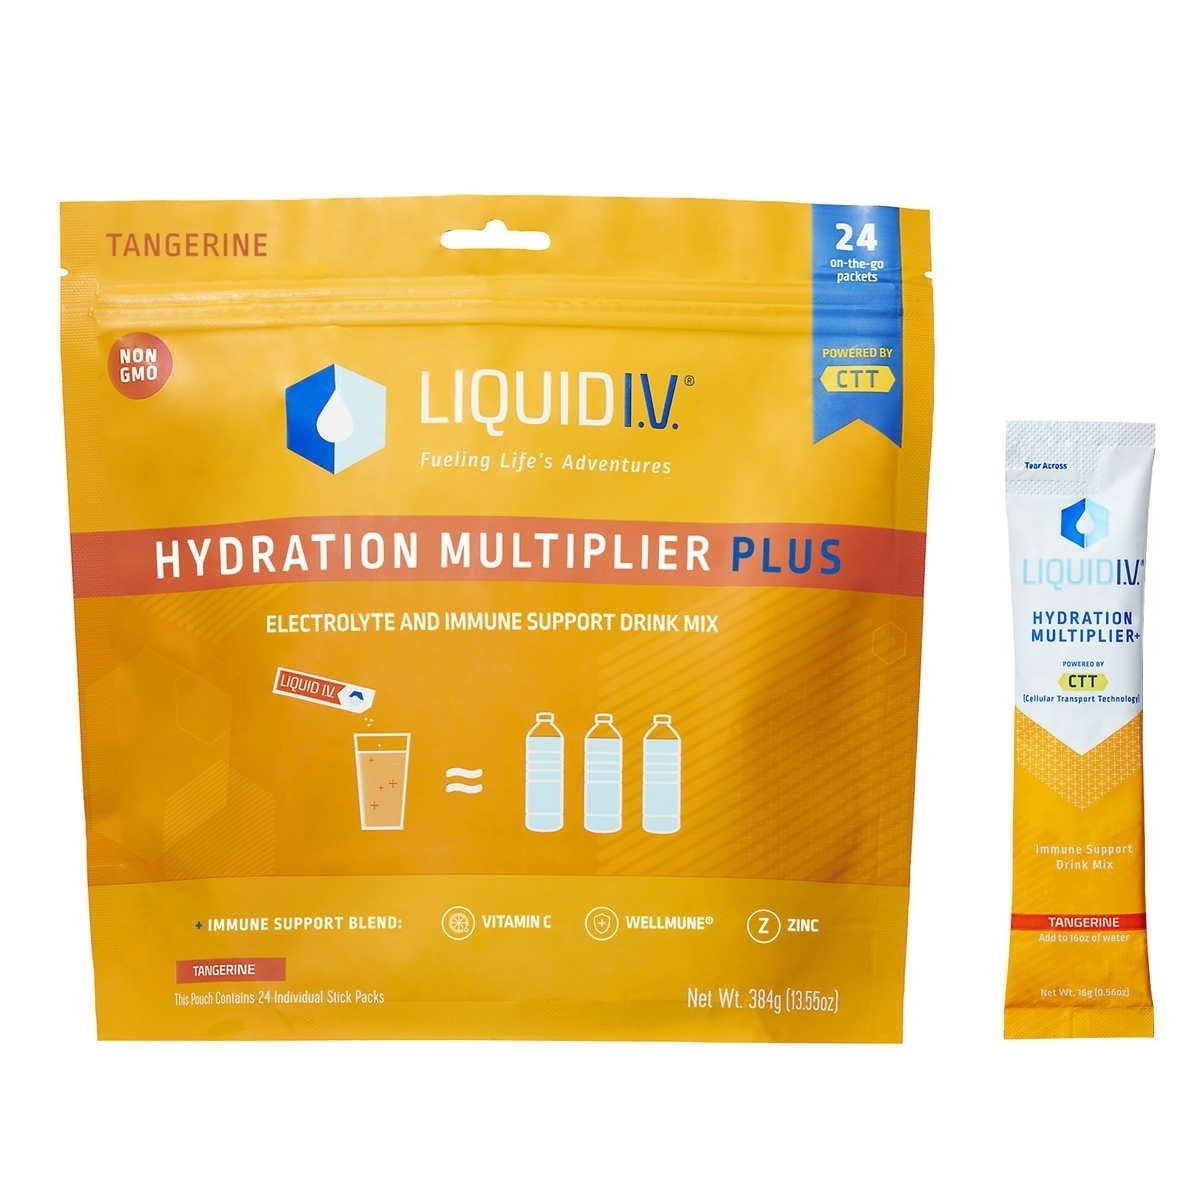 Liquid I.V. Hydration Multiplier Plus Immune Support, 24 Serving Stick Packs